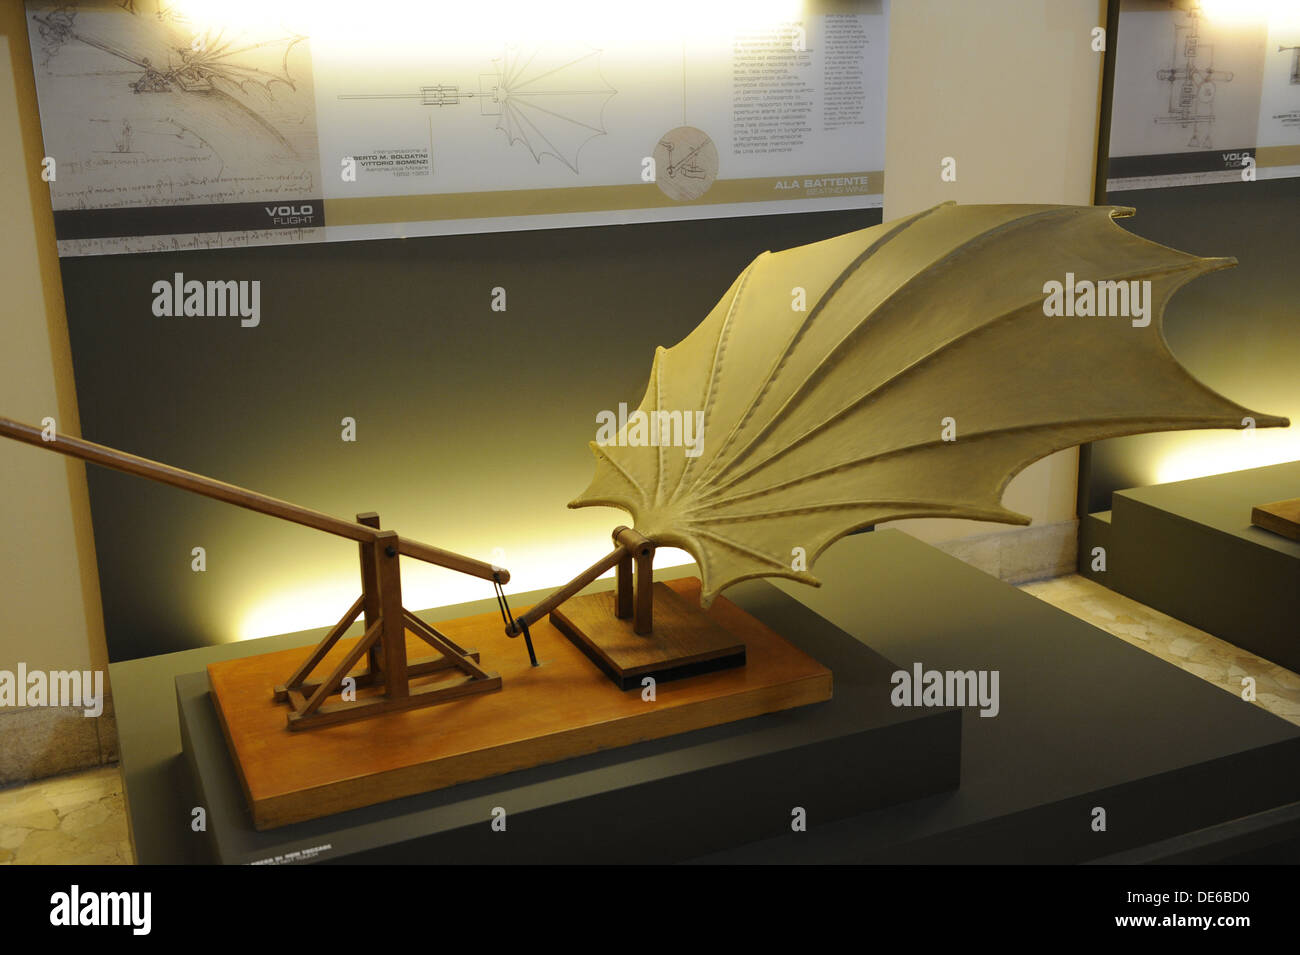 Flugmaschinen. Schlagende Flügel. Studie von Leonardo da Vinci. Modell von Mario Alberto und Vittorio Somenzi, 1952. Stockfoto